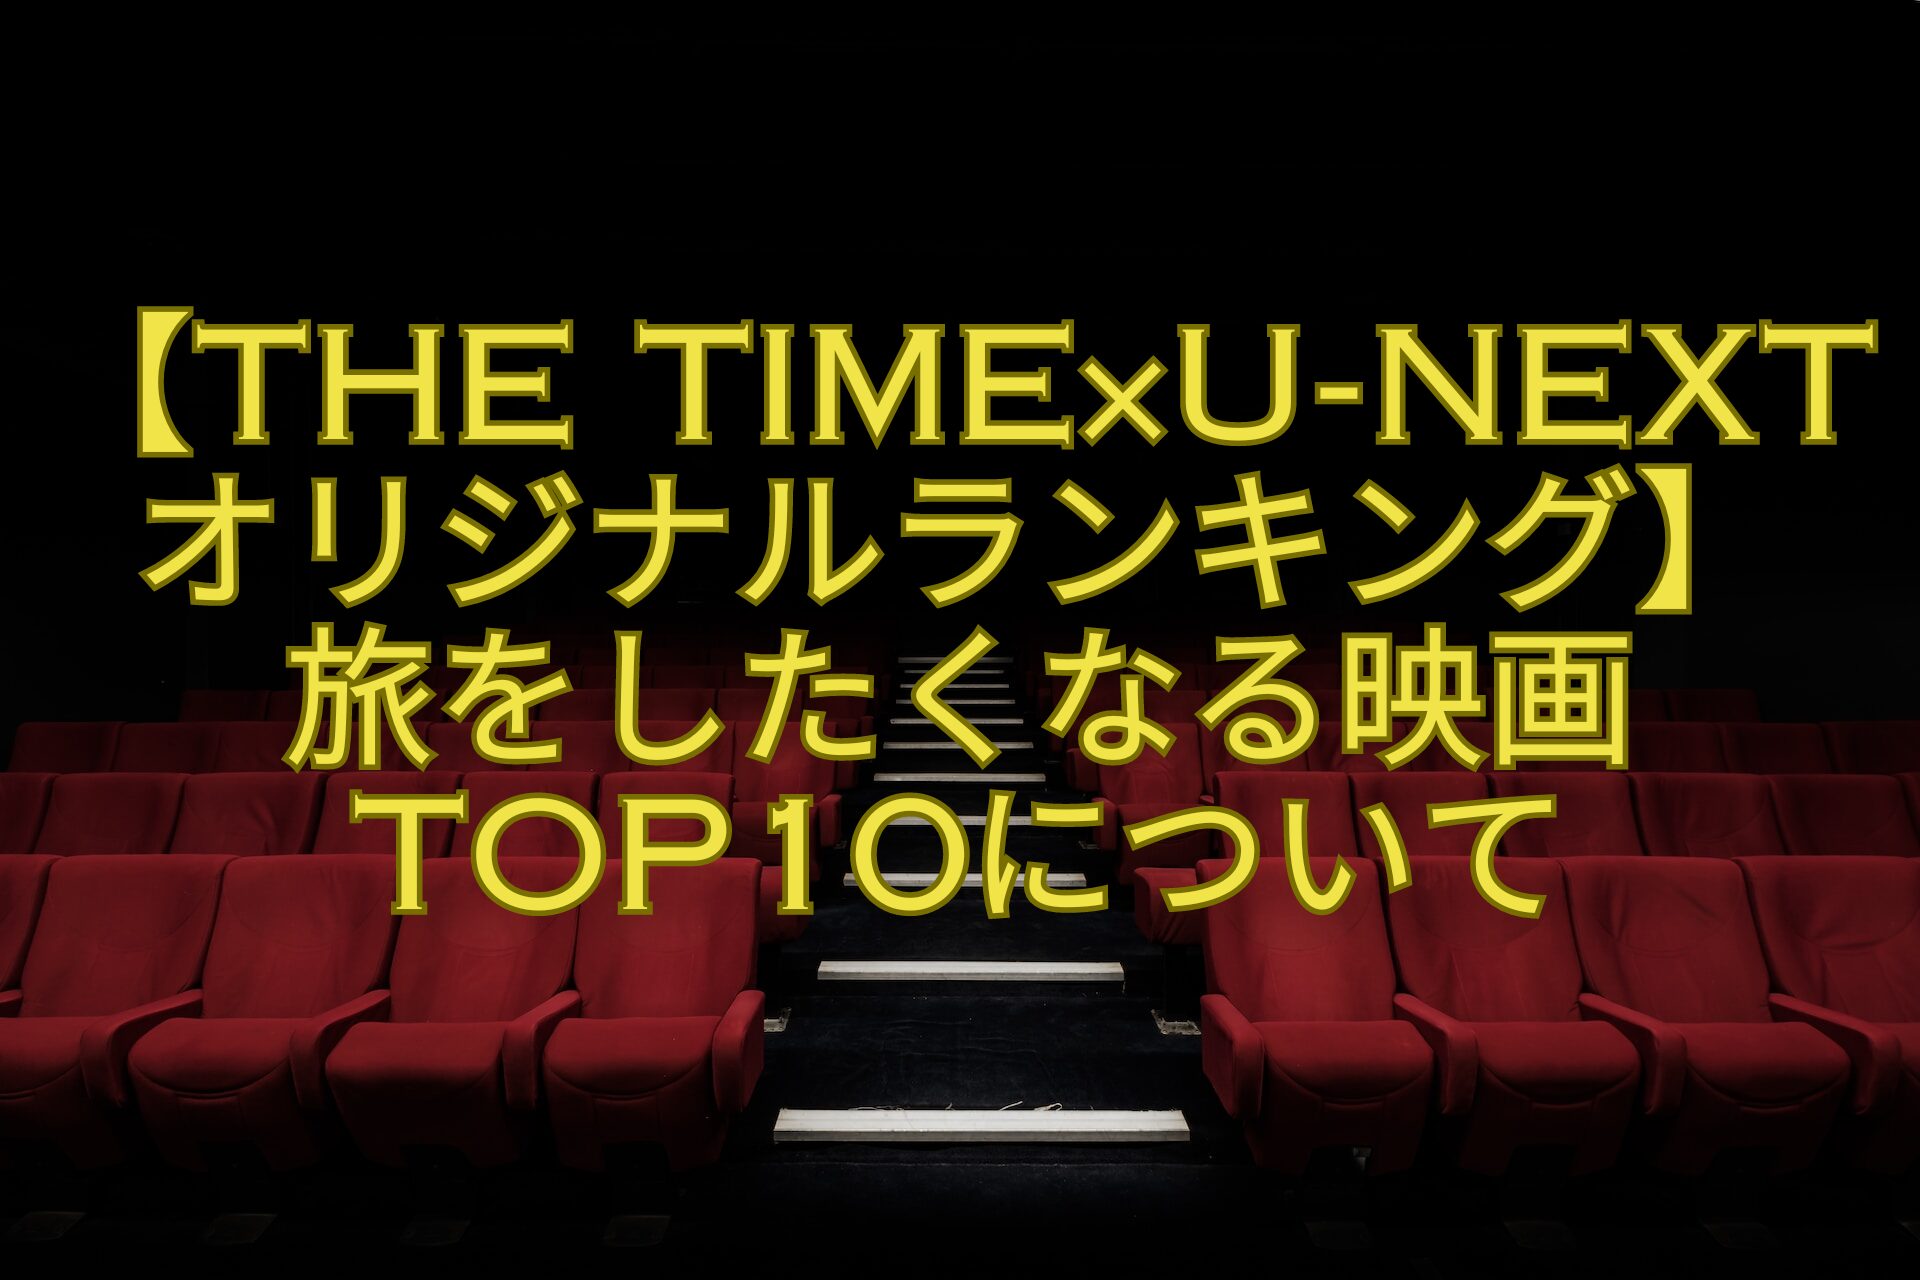 【THE-TIME×U-NEXTオリジナルランキング】-旅をしたくなる映画TOP10について